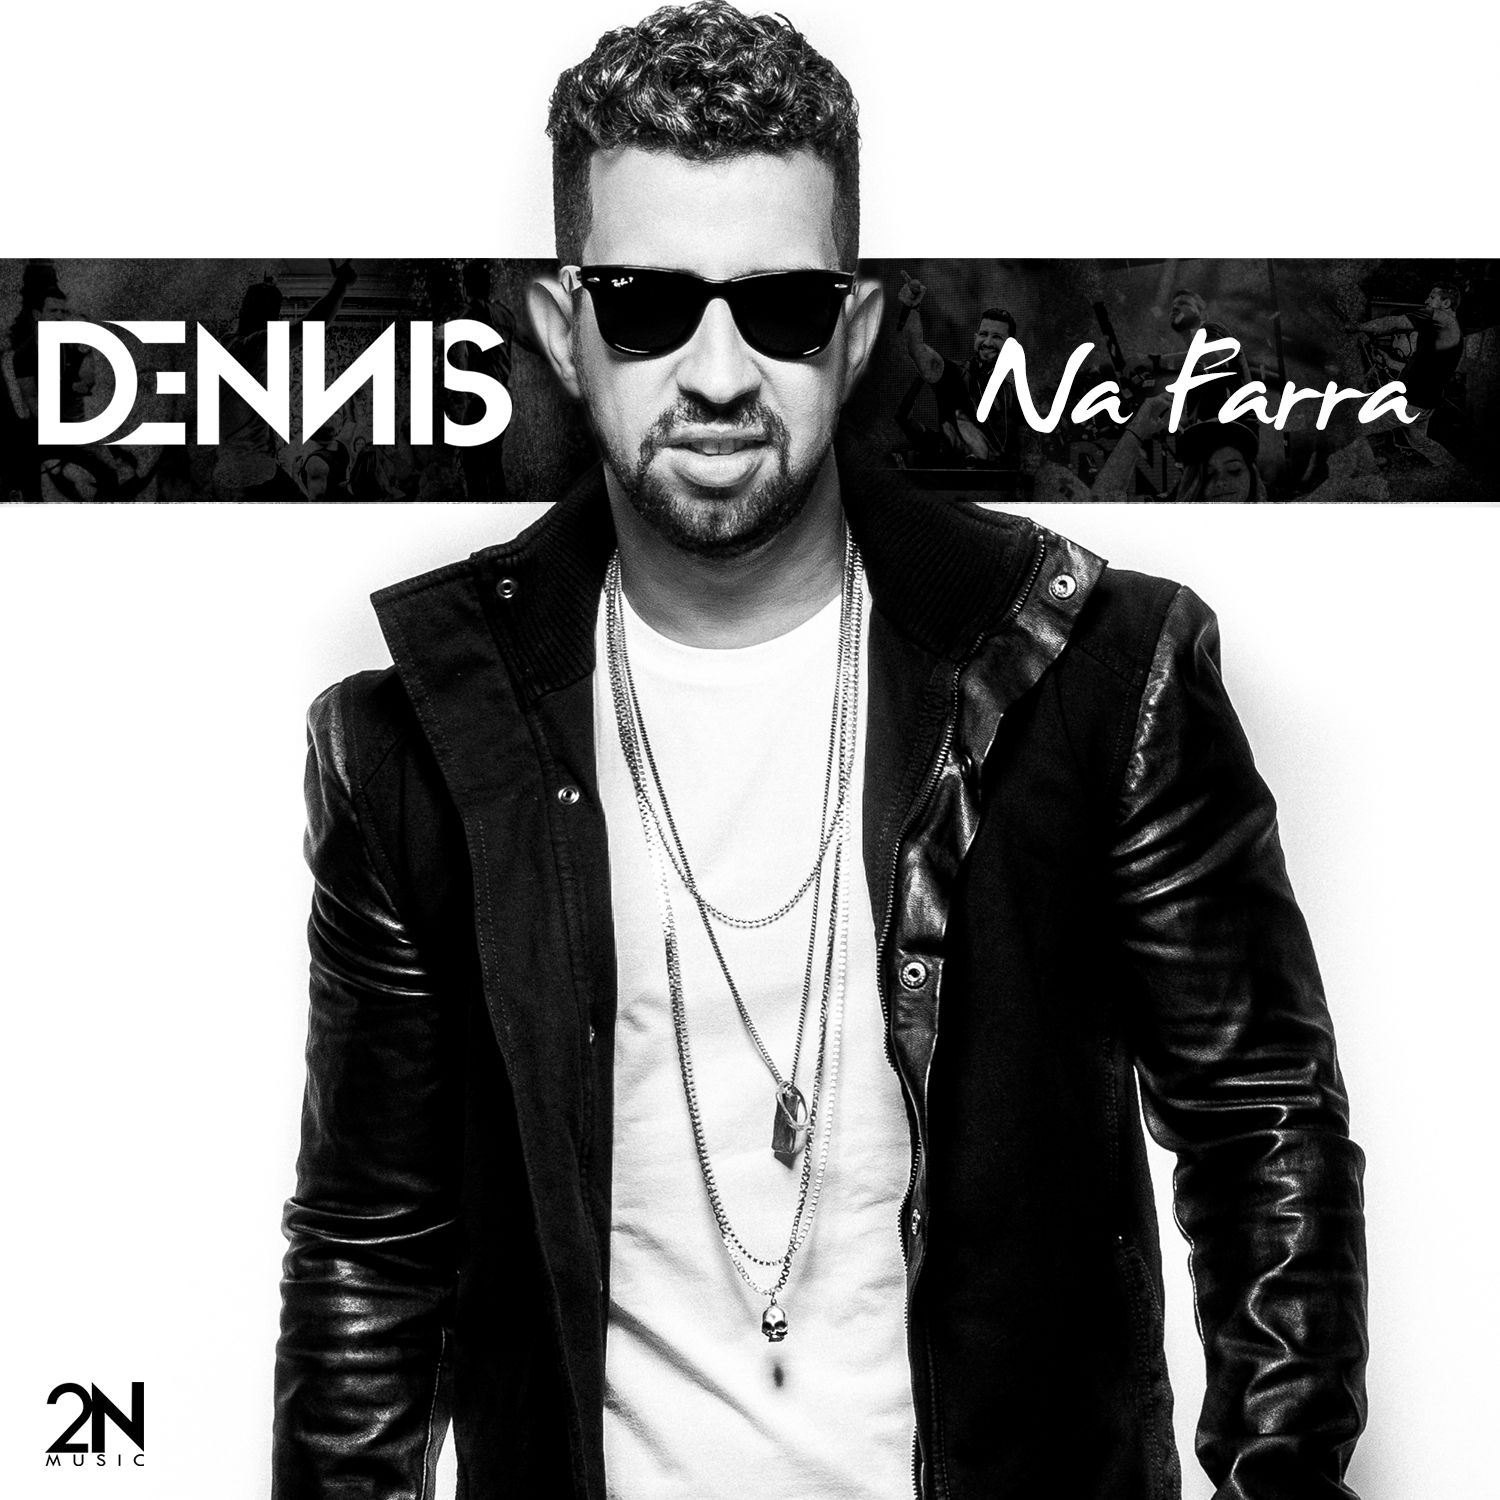 Imagem do álbum Na Farra do(a) artista Dennis DJ